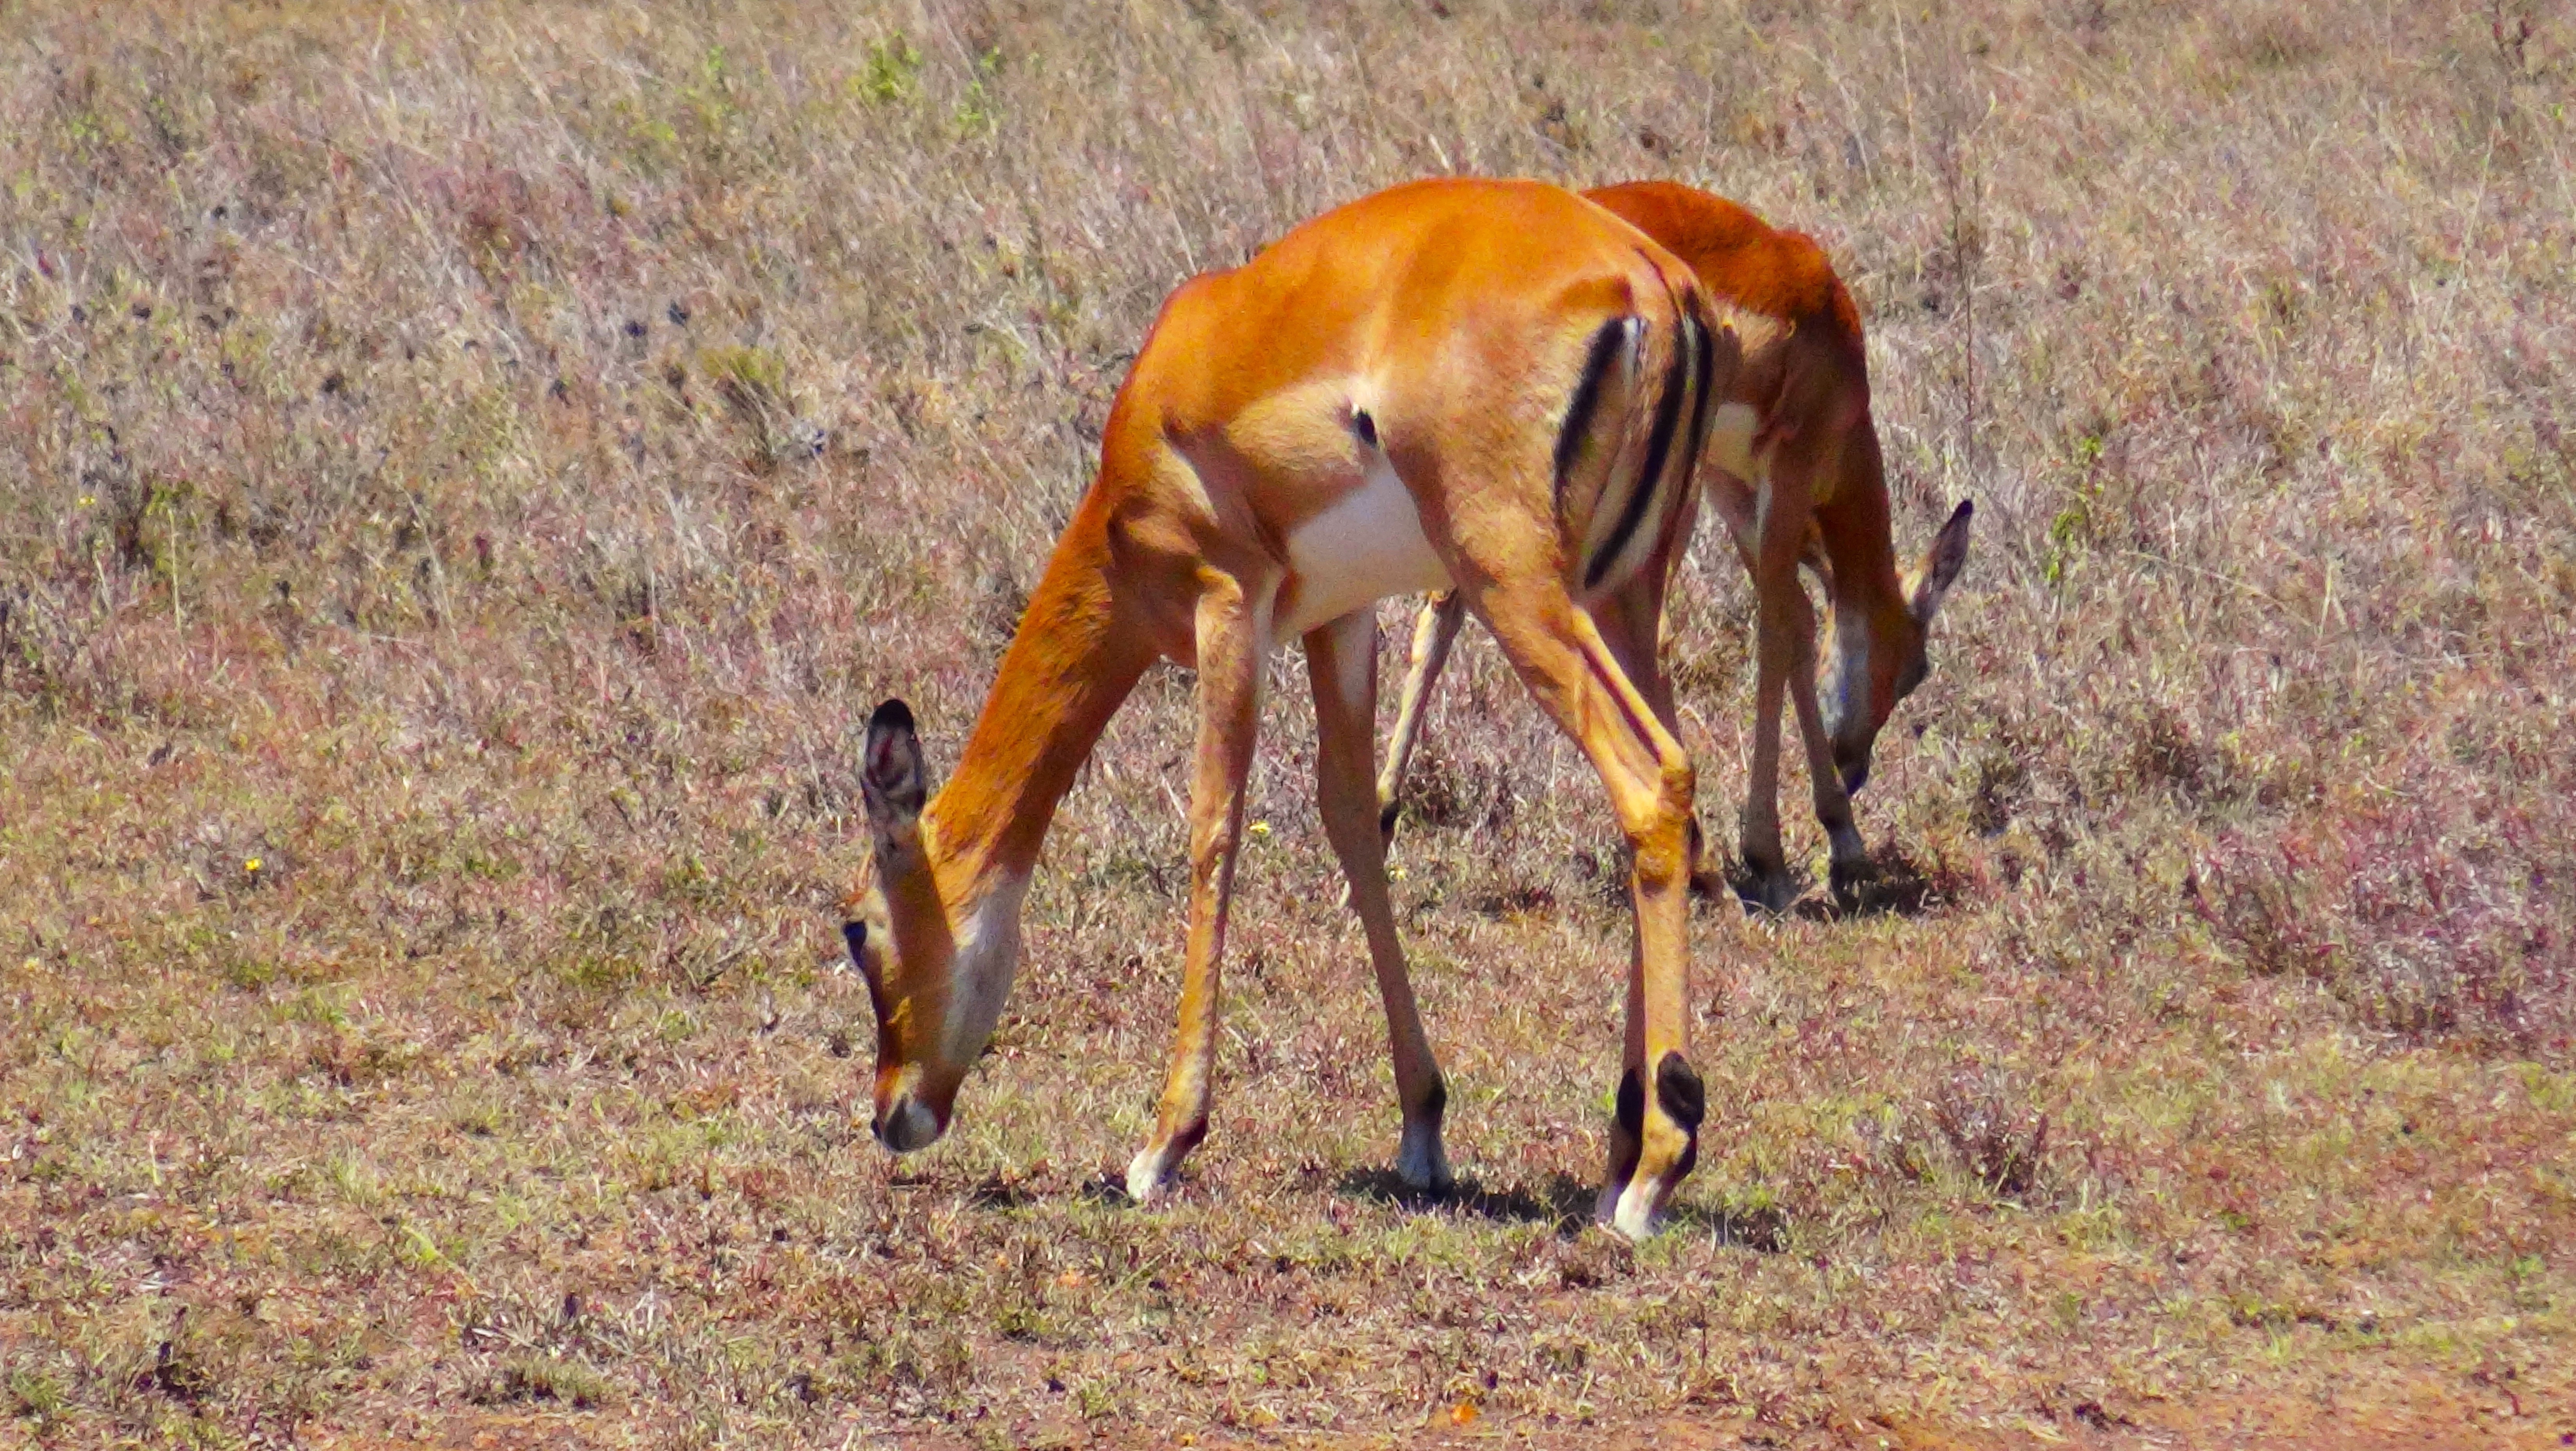 Impala eating